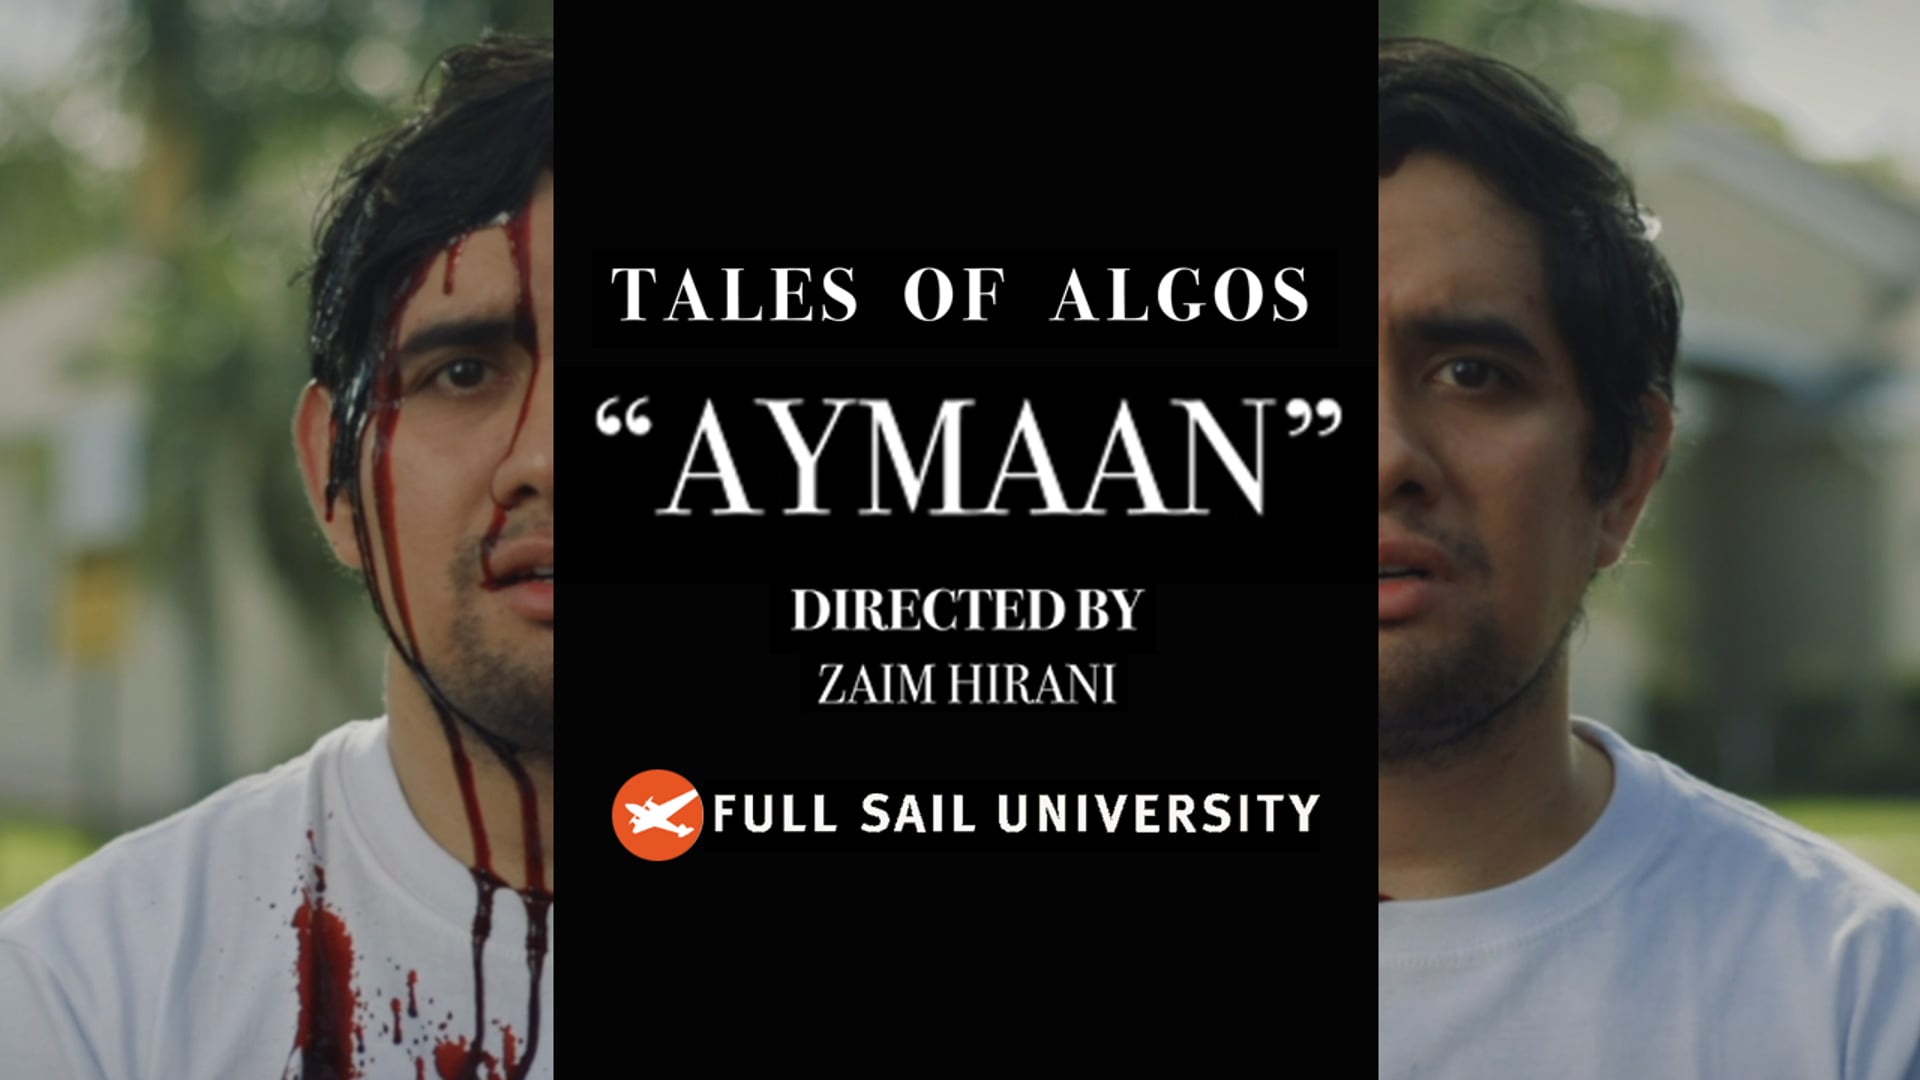 TALES OF ALGOS - "AYMAAN"